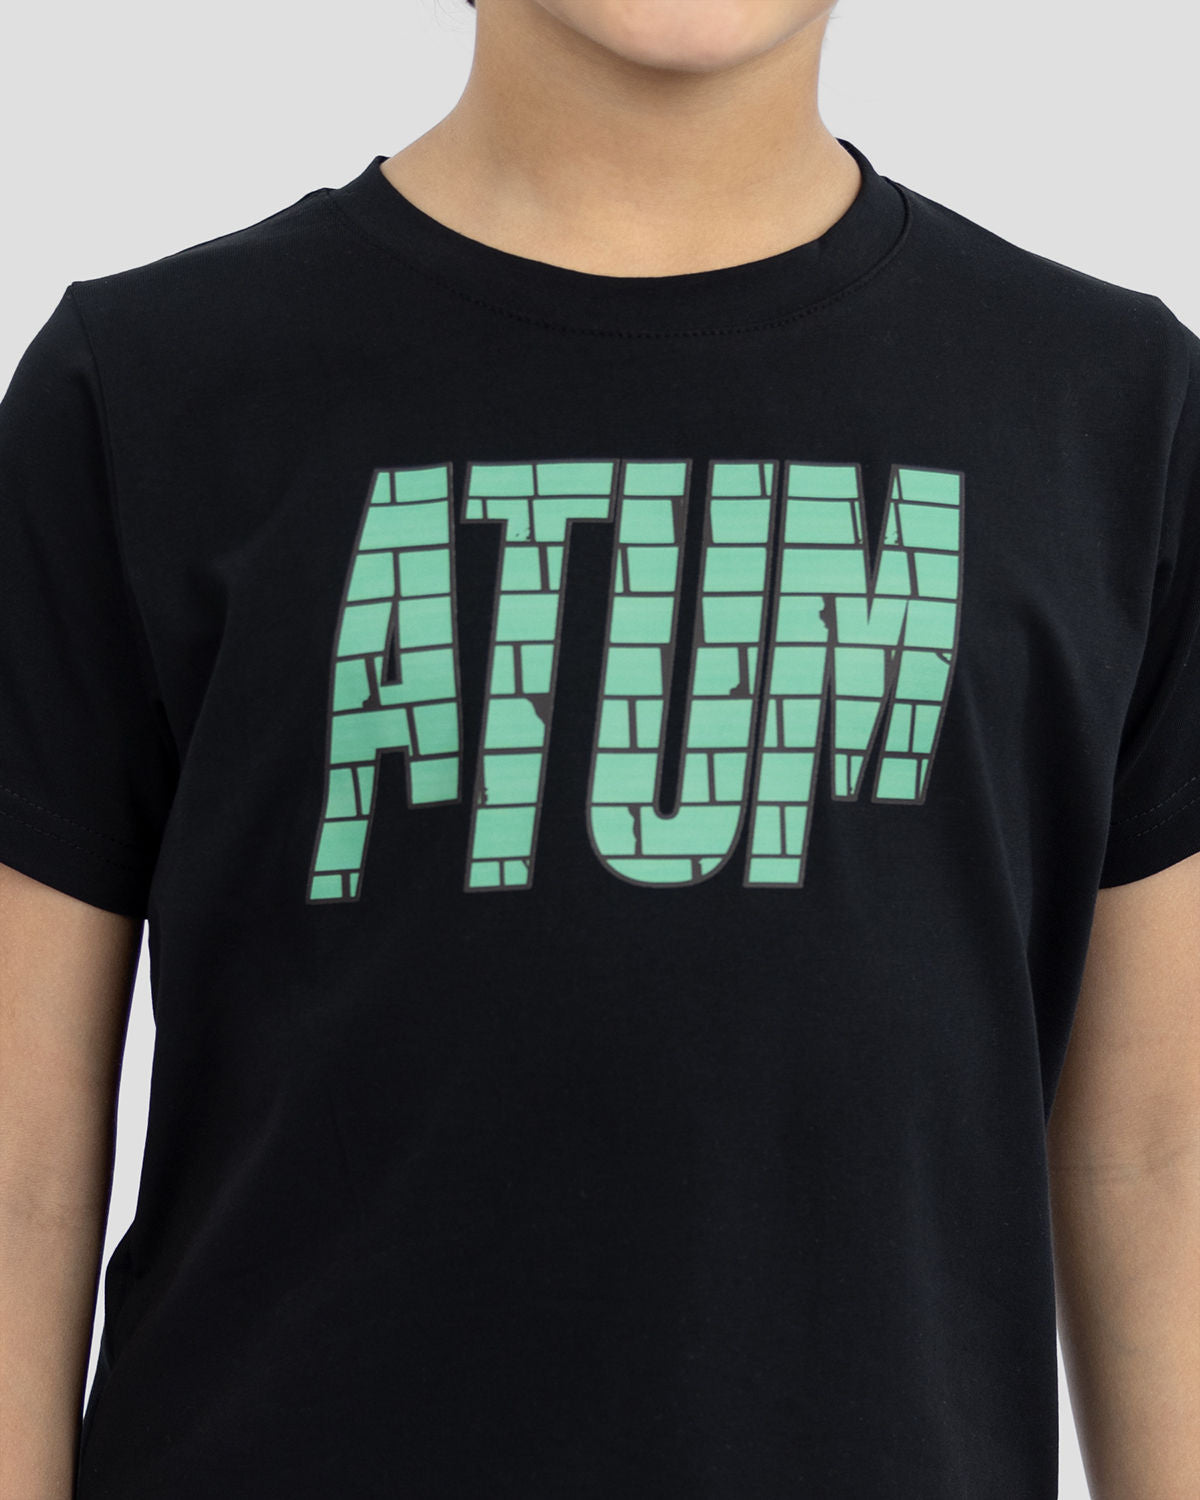 Atum Kides Super Hero T-shirts - Atum Egypt